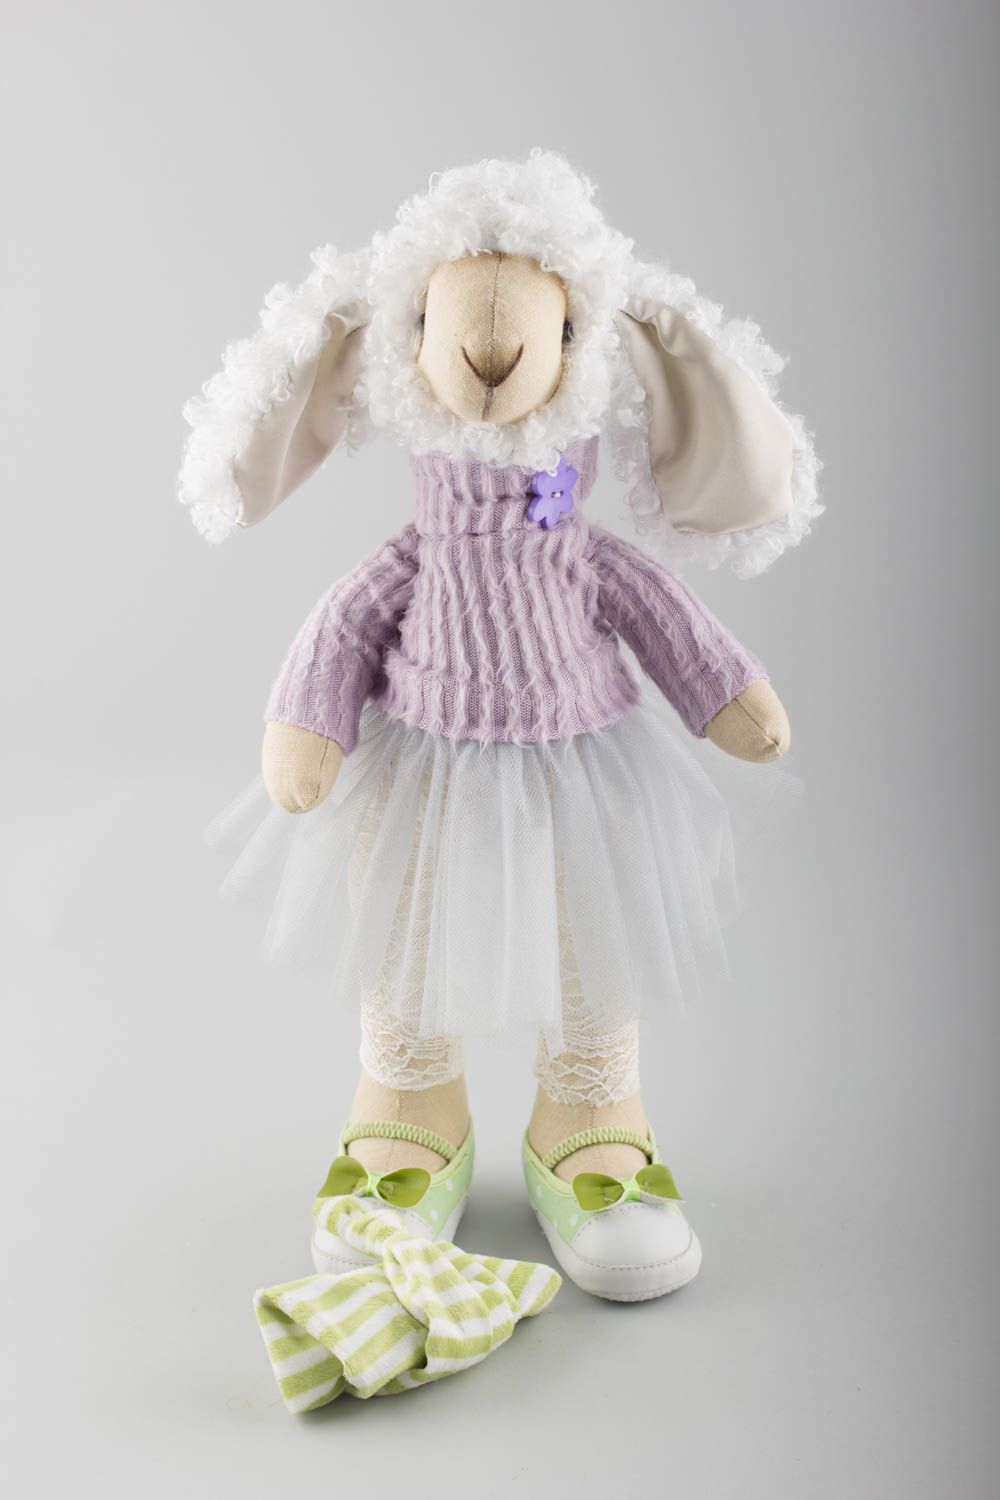 Textil Kuscheltier Schaf im Kleid niedlich Spielzeug für Kinder und Deko foto 4